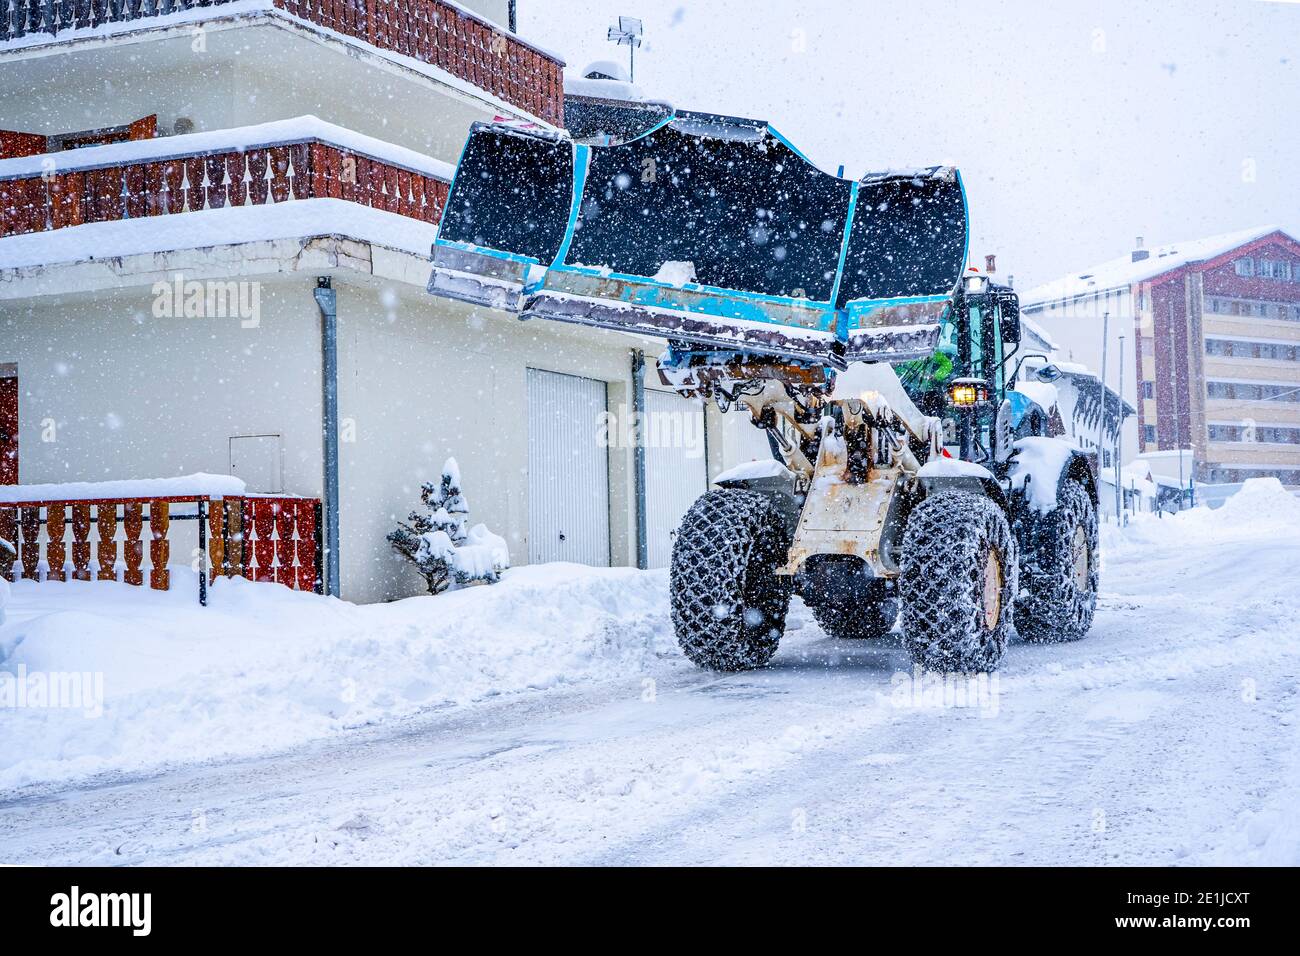 Trattore che rimuove la neve dalle grandi rive della neve vicino alla strada su una stazione sciistica nelle Alpi francesi. Foto di alta qualità Foto Stock